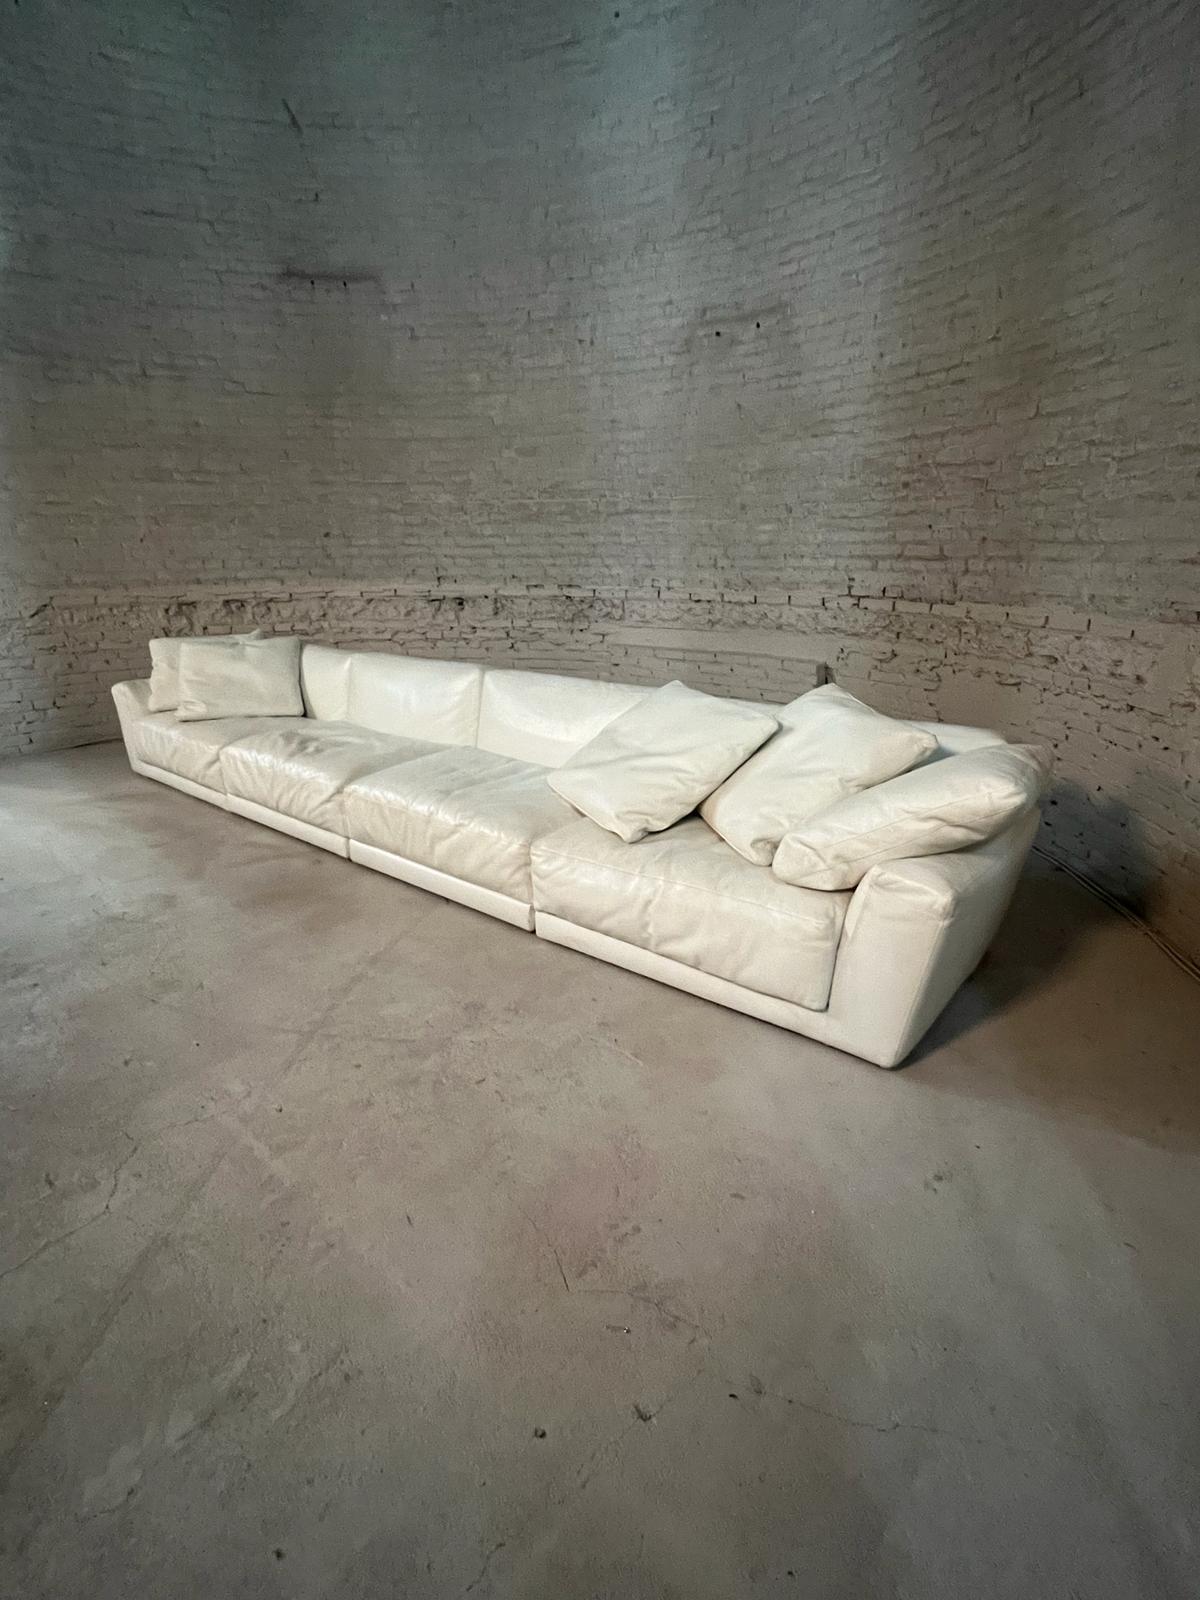 Un canapé extravagant en cuir de veau souple. Fabriqué par B&B Italia, conçu par Antonio Citterio. L'ensemble nommé 'LUIS' contient 7 unités modulaires qui peuvent être combinées en plusieurs configurations.

Les oreillers sont dotés de la